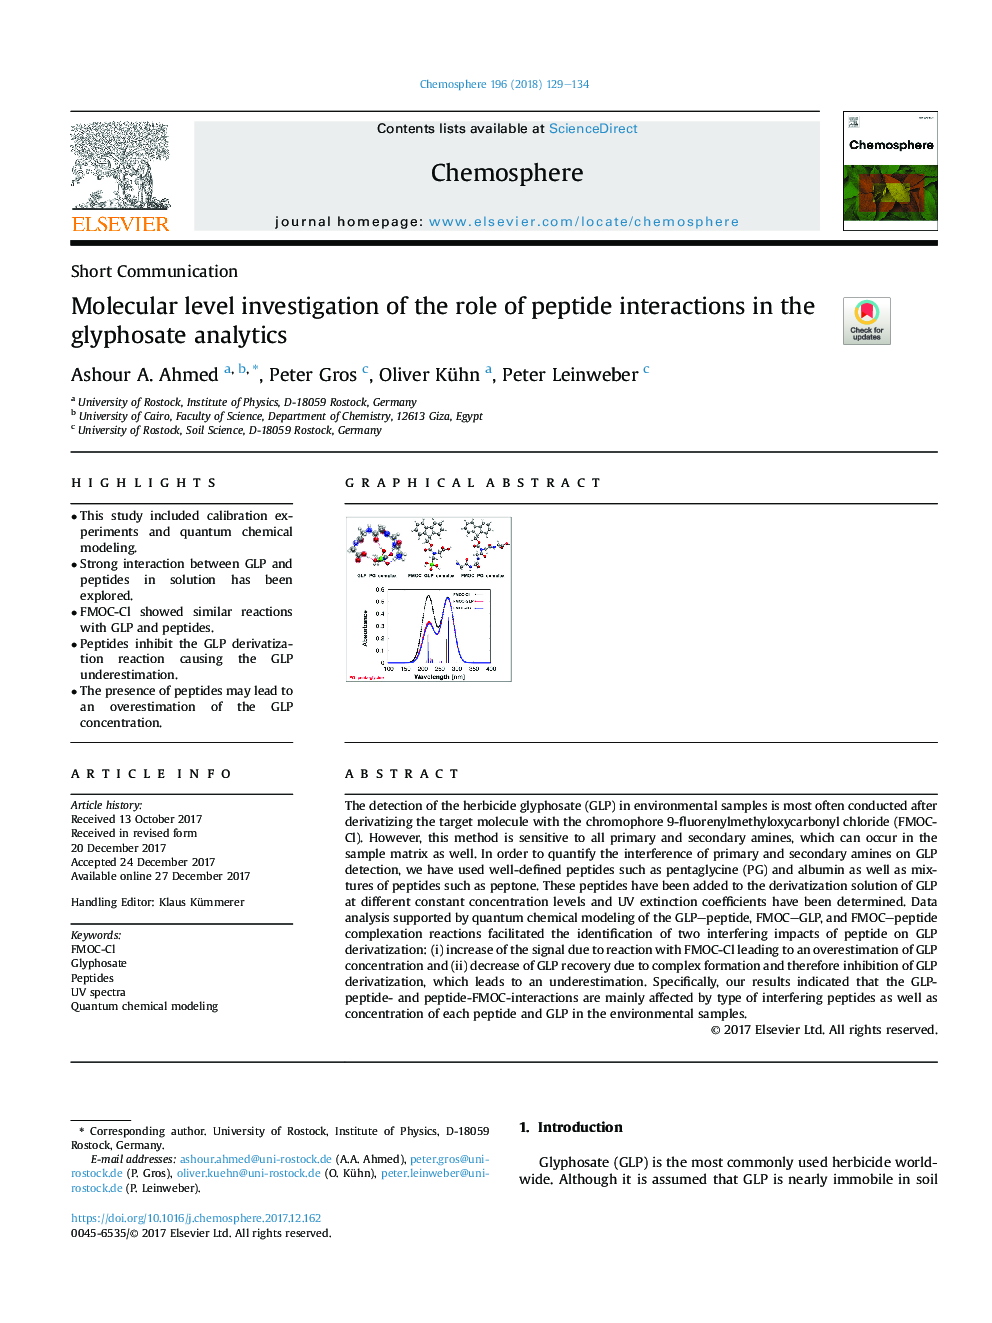 بررسی سطح مولکولی نقش تعاملات پپتیدی در تجزیه و تحلیل گلیفوسیت 